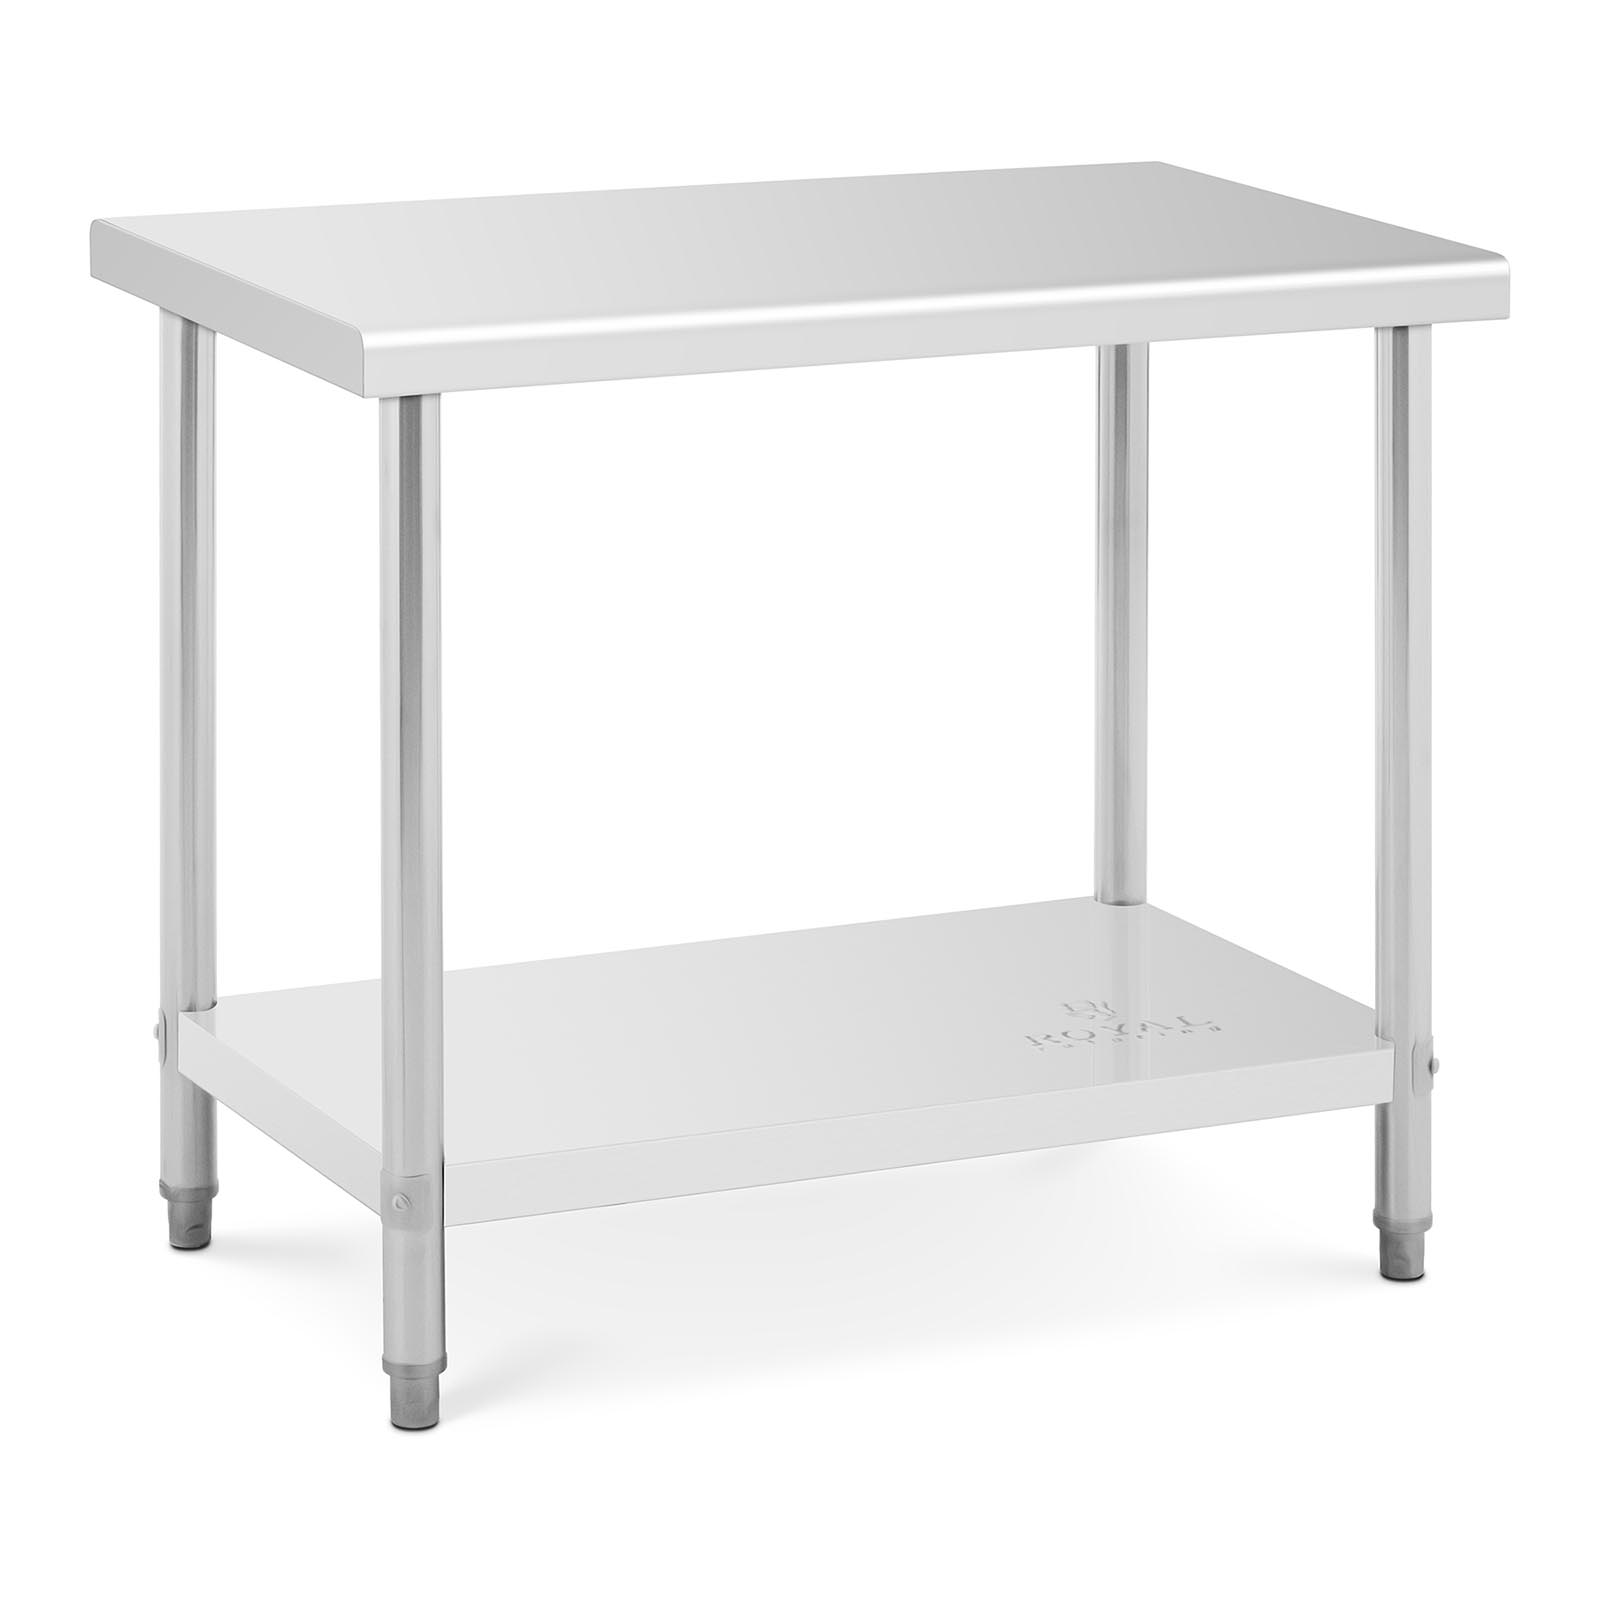 Nerezový pracovný stôl - 100 x 60 cm - nosnosť 90 kg